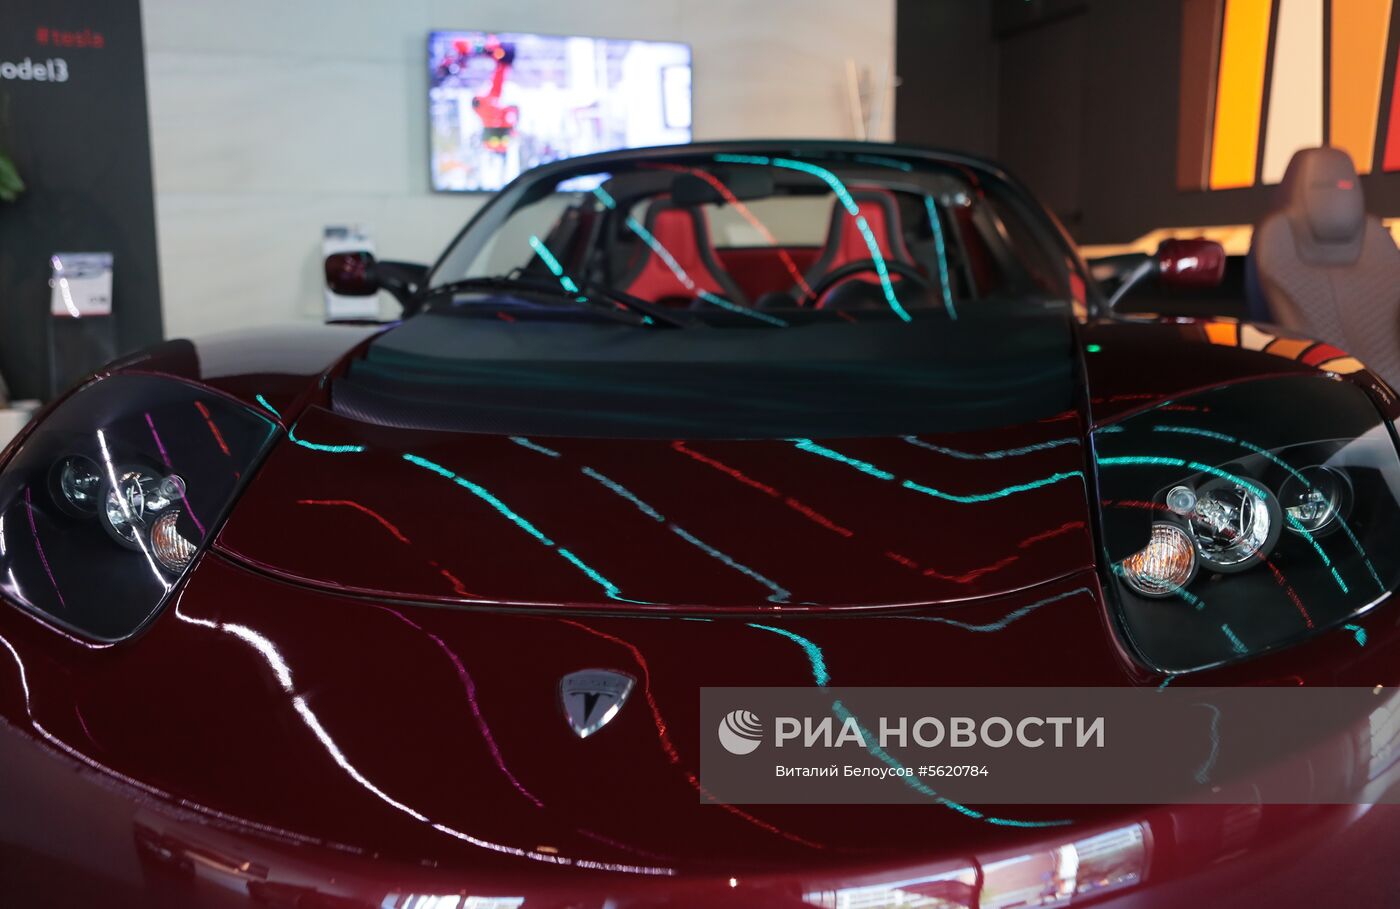 Автомобильный салон Moscow Tesla Club